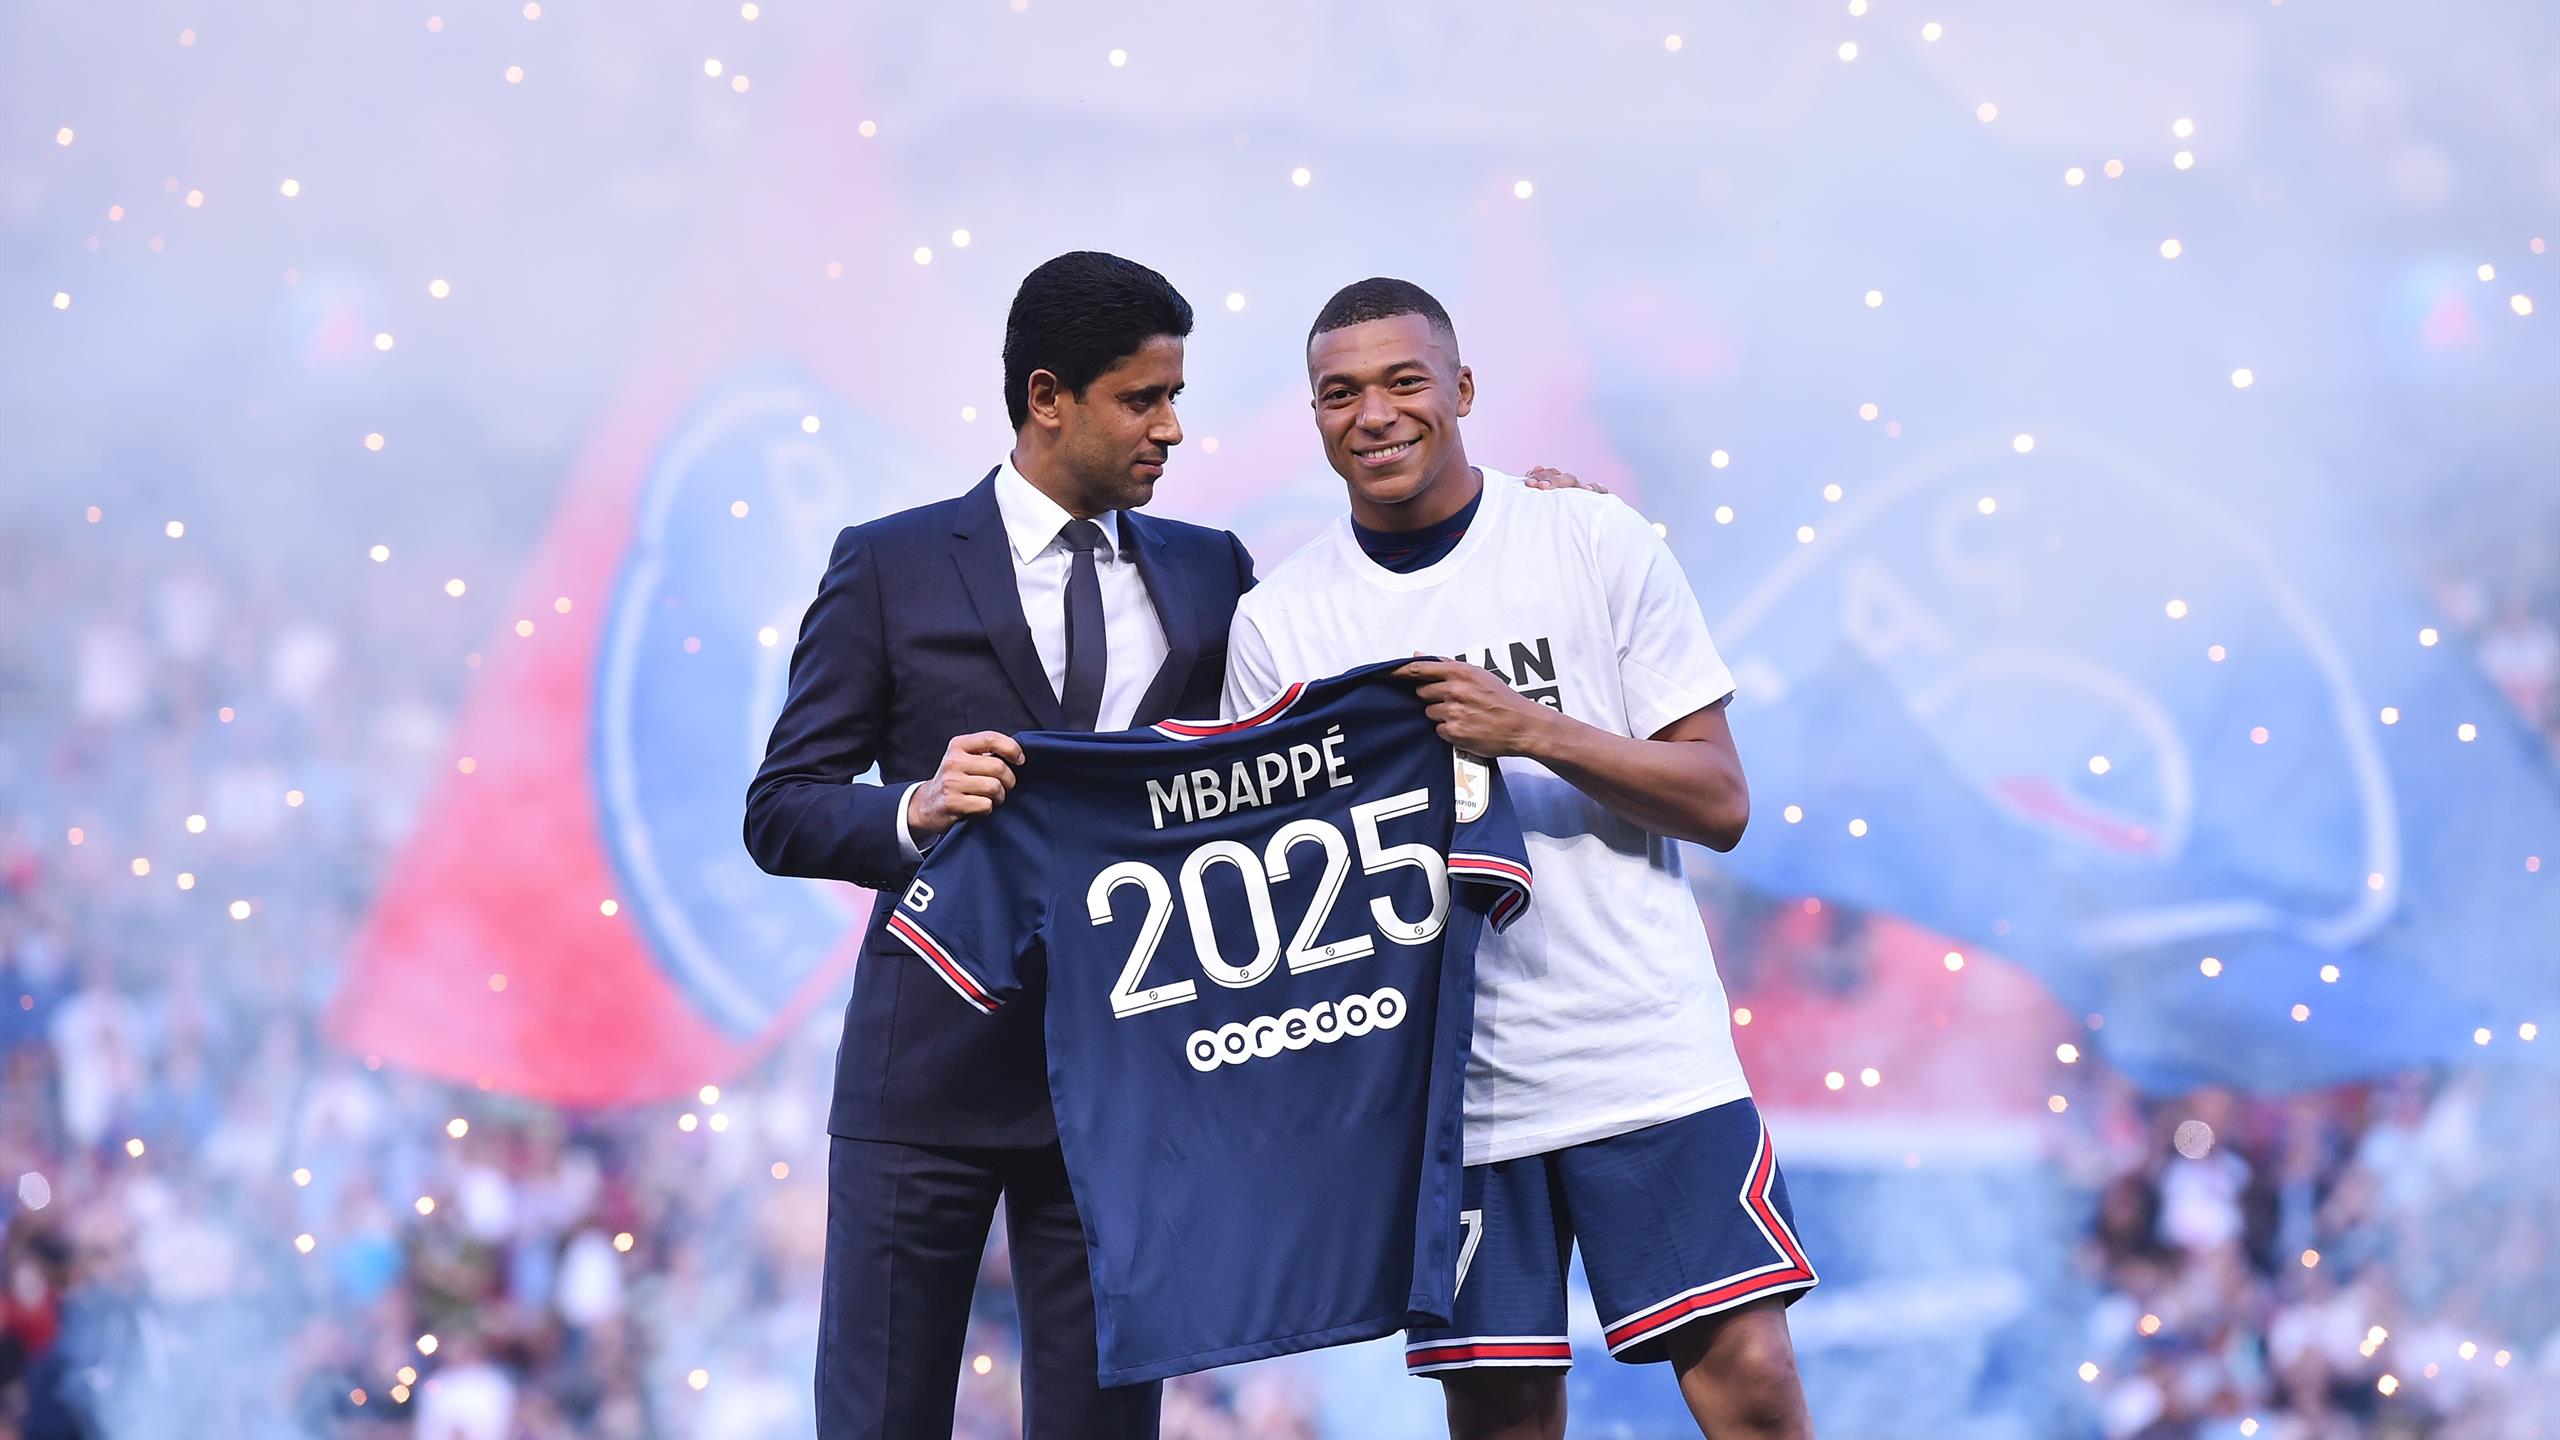 Mercato - PSG : Le miracle Kylian Mbappé, ça change tout au projet - Eurosport FR